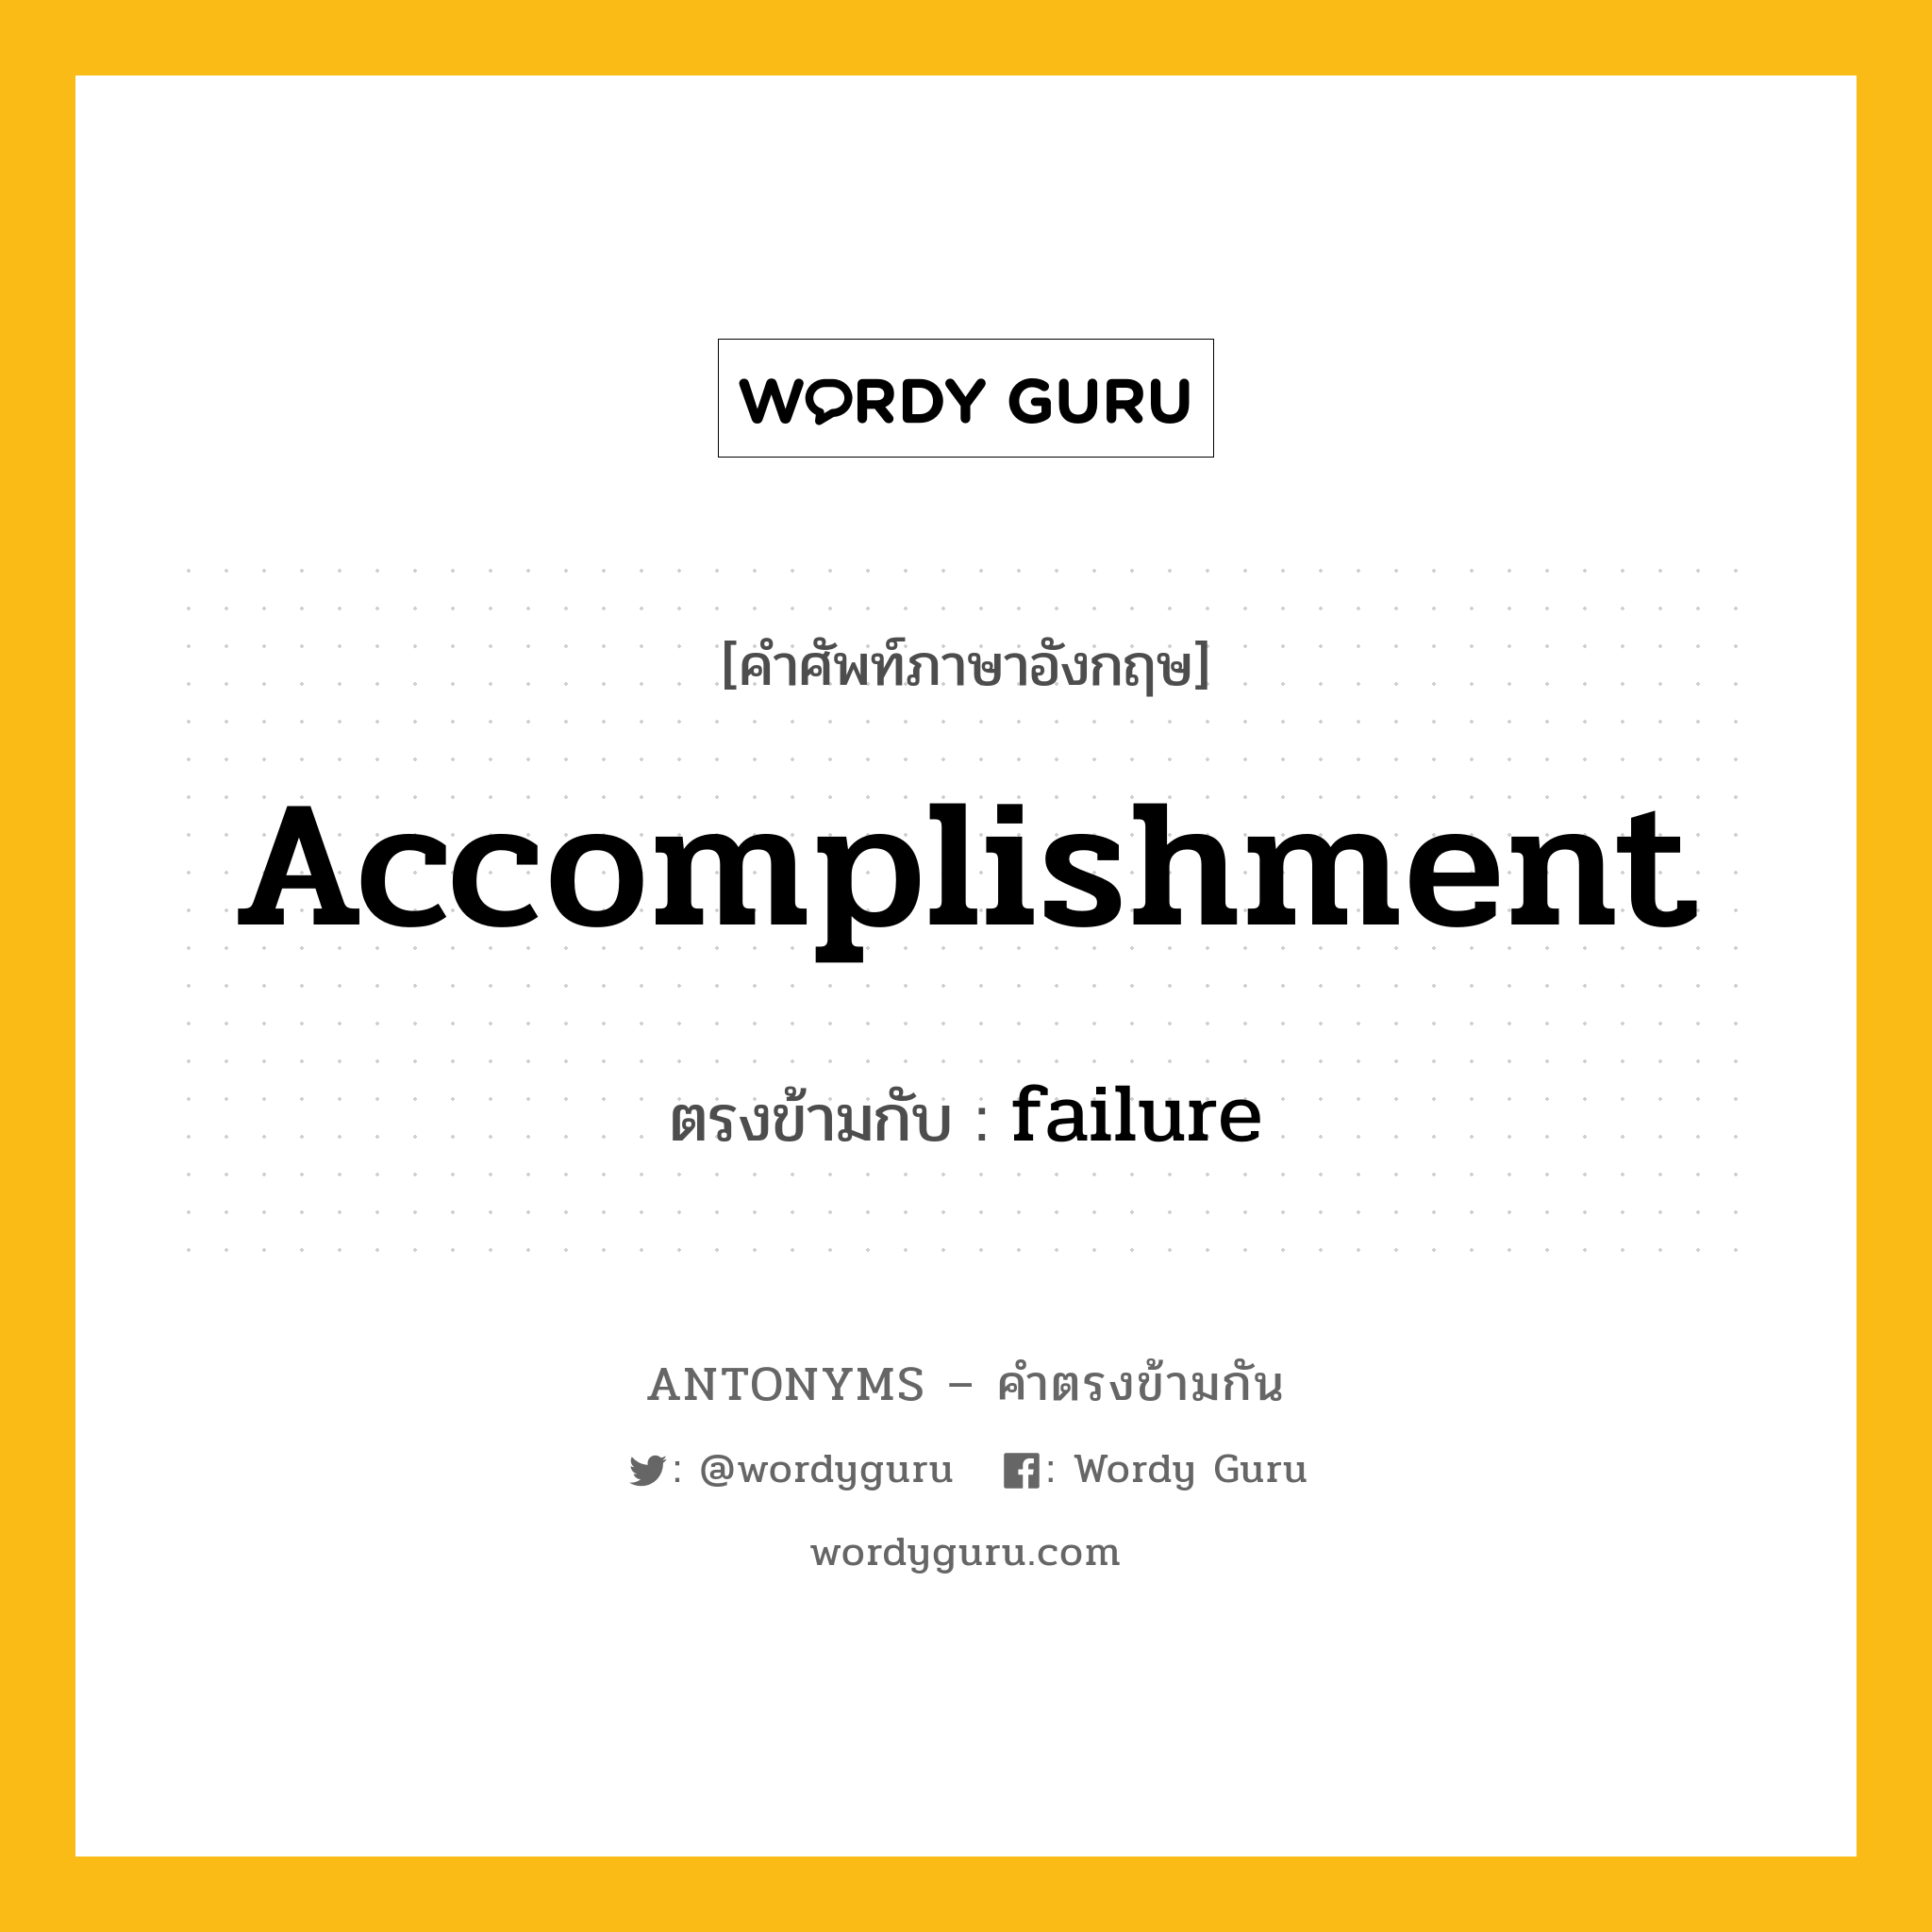 accomplishment เป็นคำตรงข้ามกับคำไหนบ้าง?, คำศัพท์ภาษาอังกฤษ accomplishment ตรงข้ามกับ failure หมวด failure